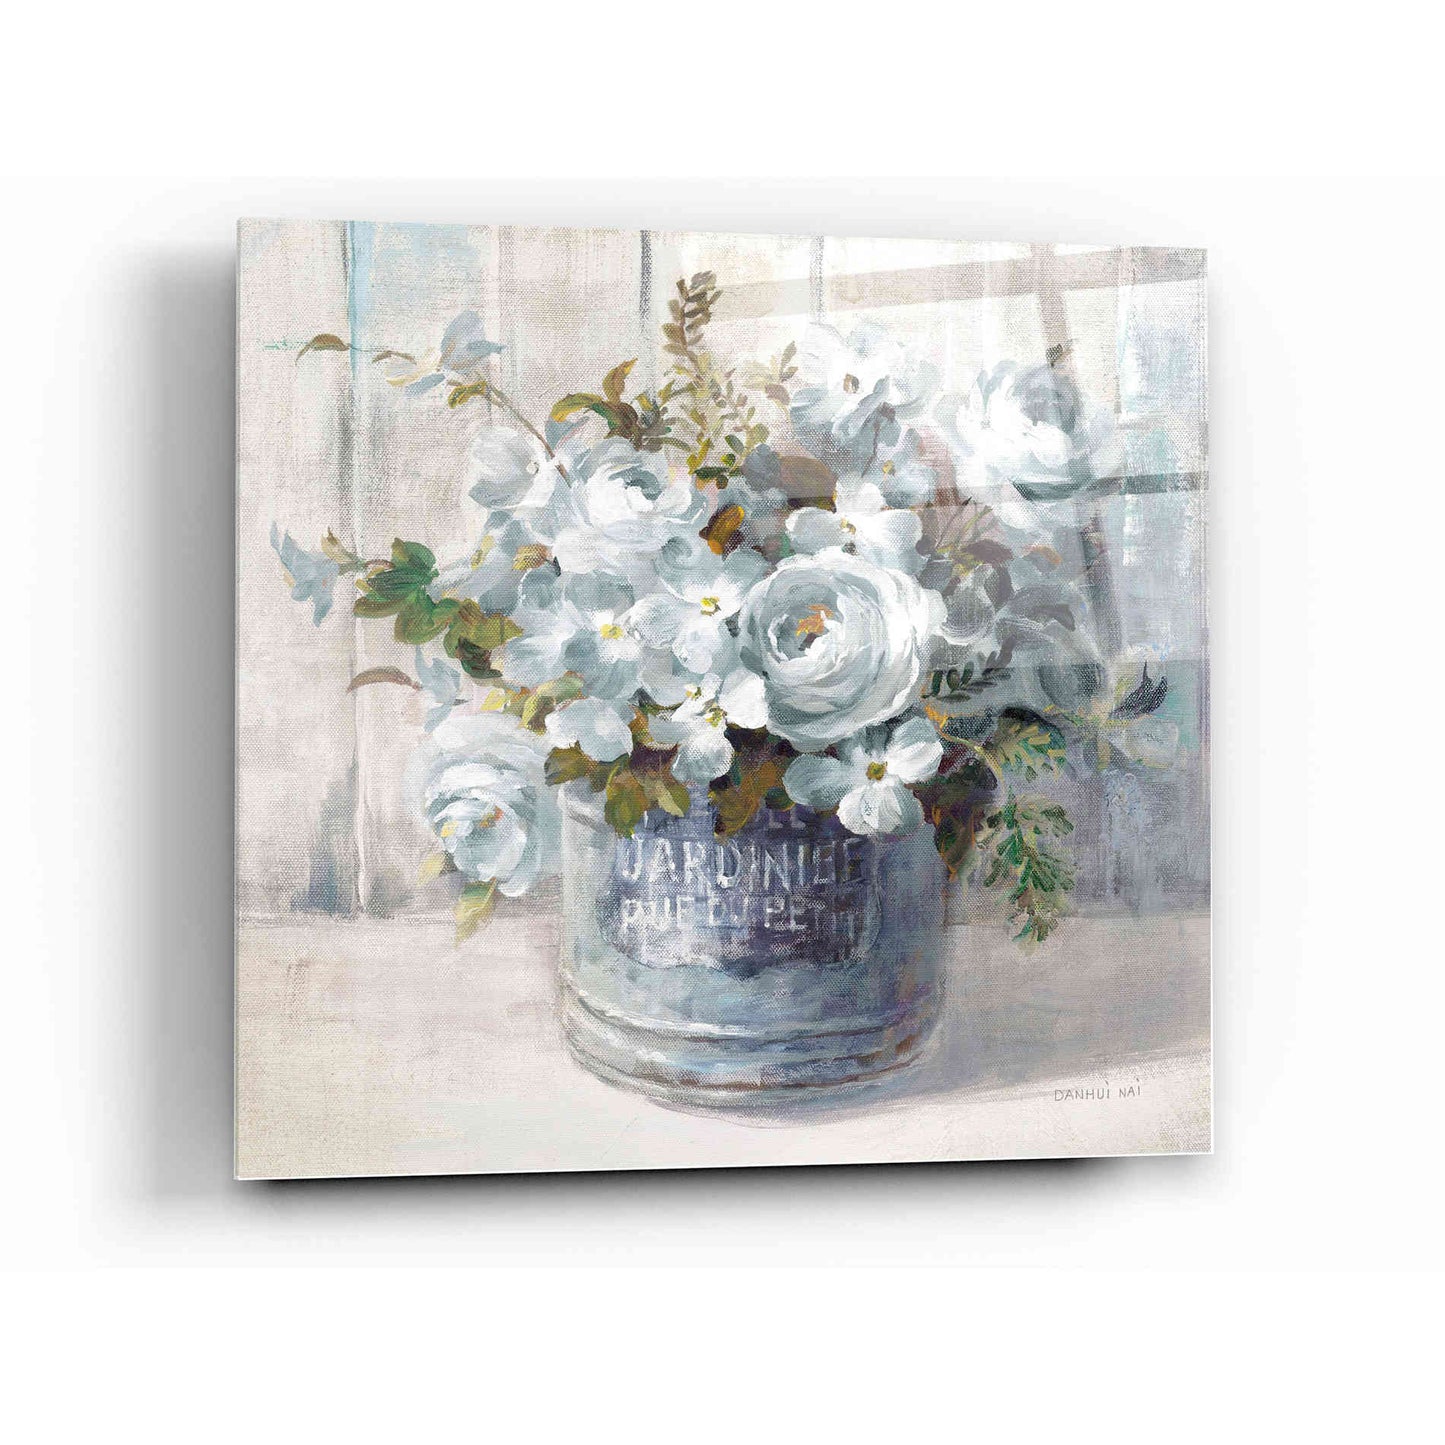 Epic Art 'Garden Blooms I Blue Crop' by Danhui Nai, Acrylic Glass Wall Art,12 x 12